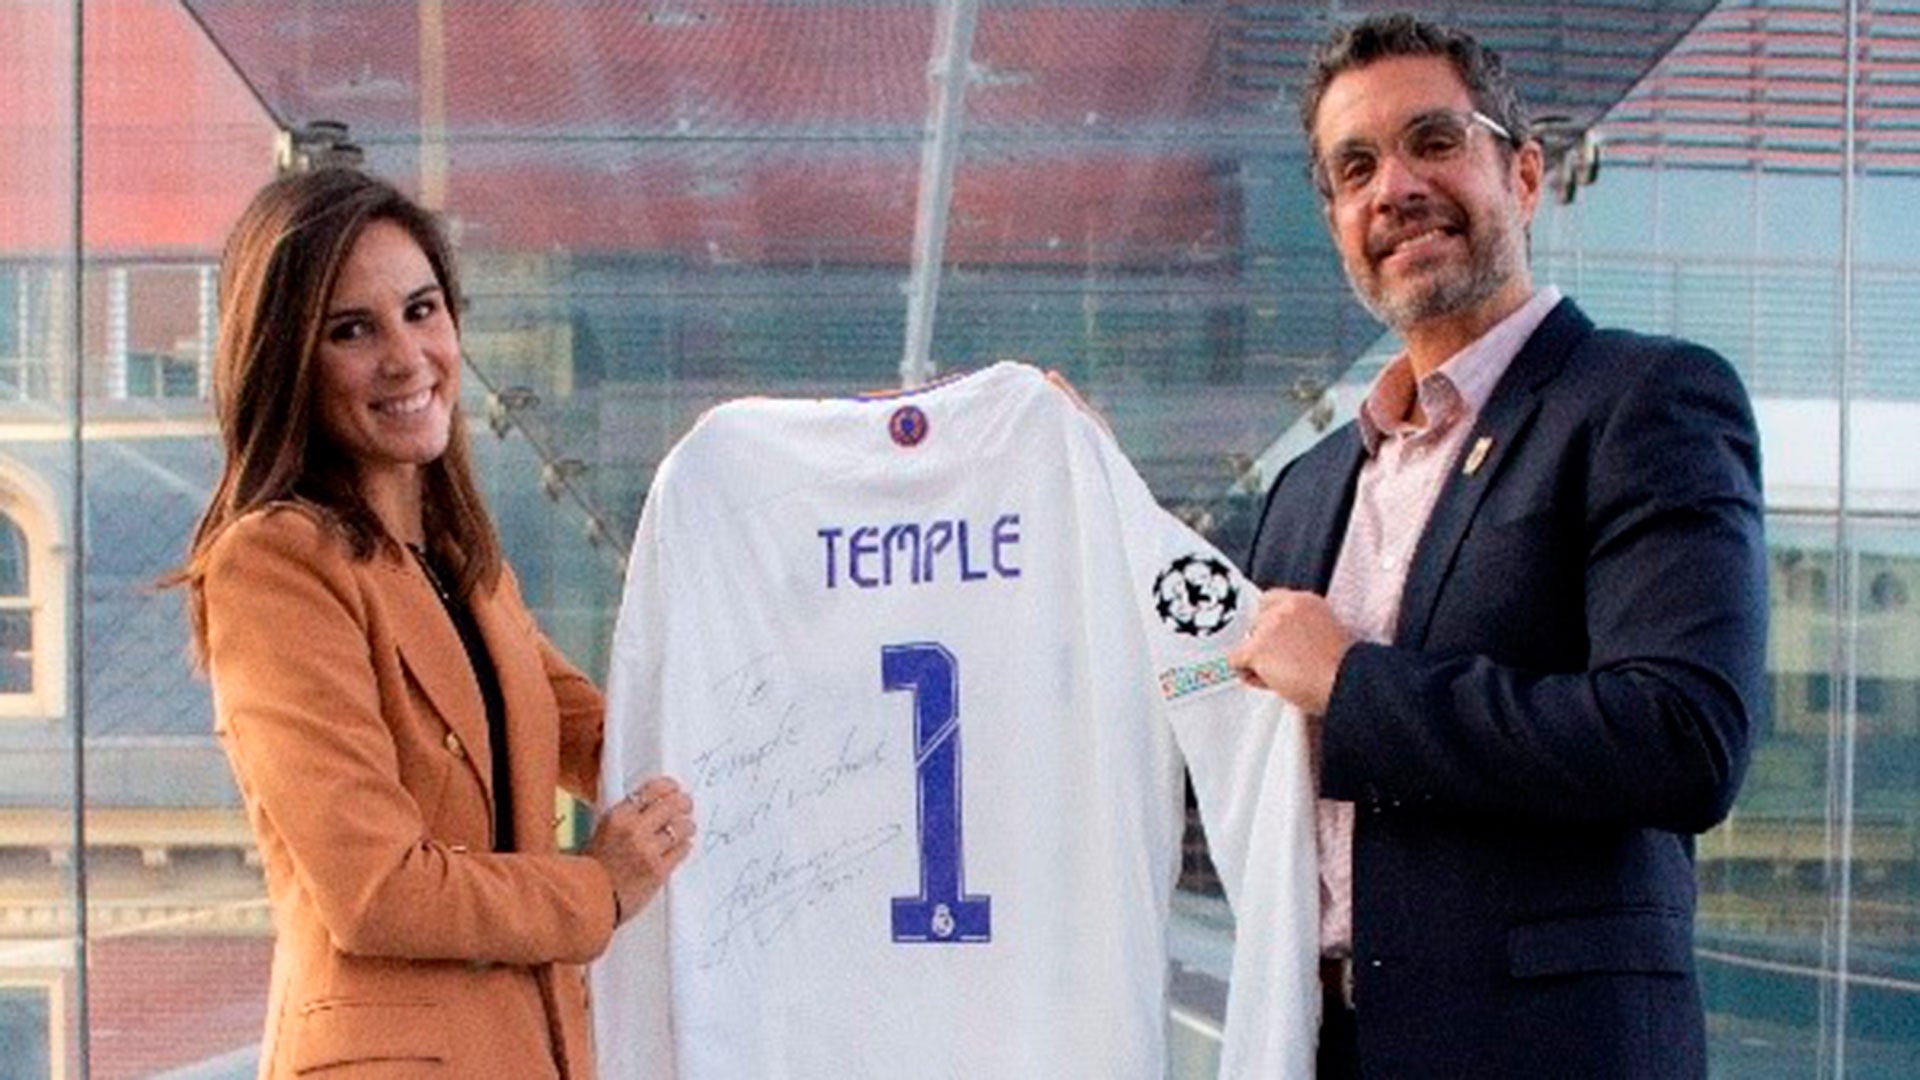 La Escuela Universitaria Real Madrid Universidad Europea firma un acuerdo con la Universidad de Temple para lanzar una doble titulación en gestión deportiva